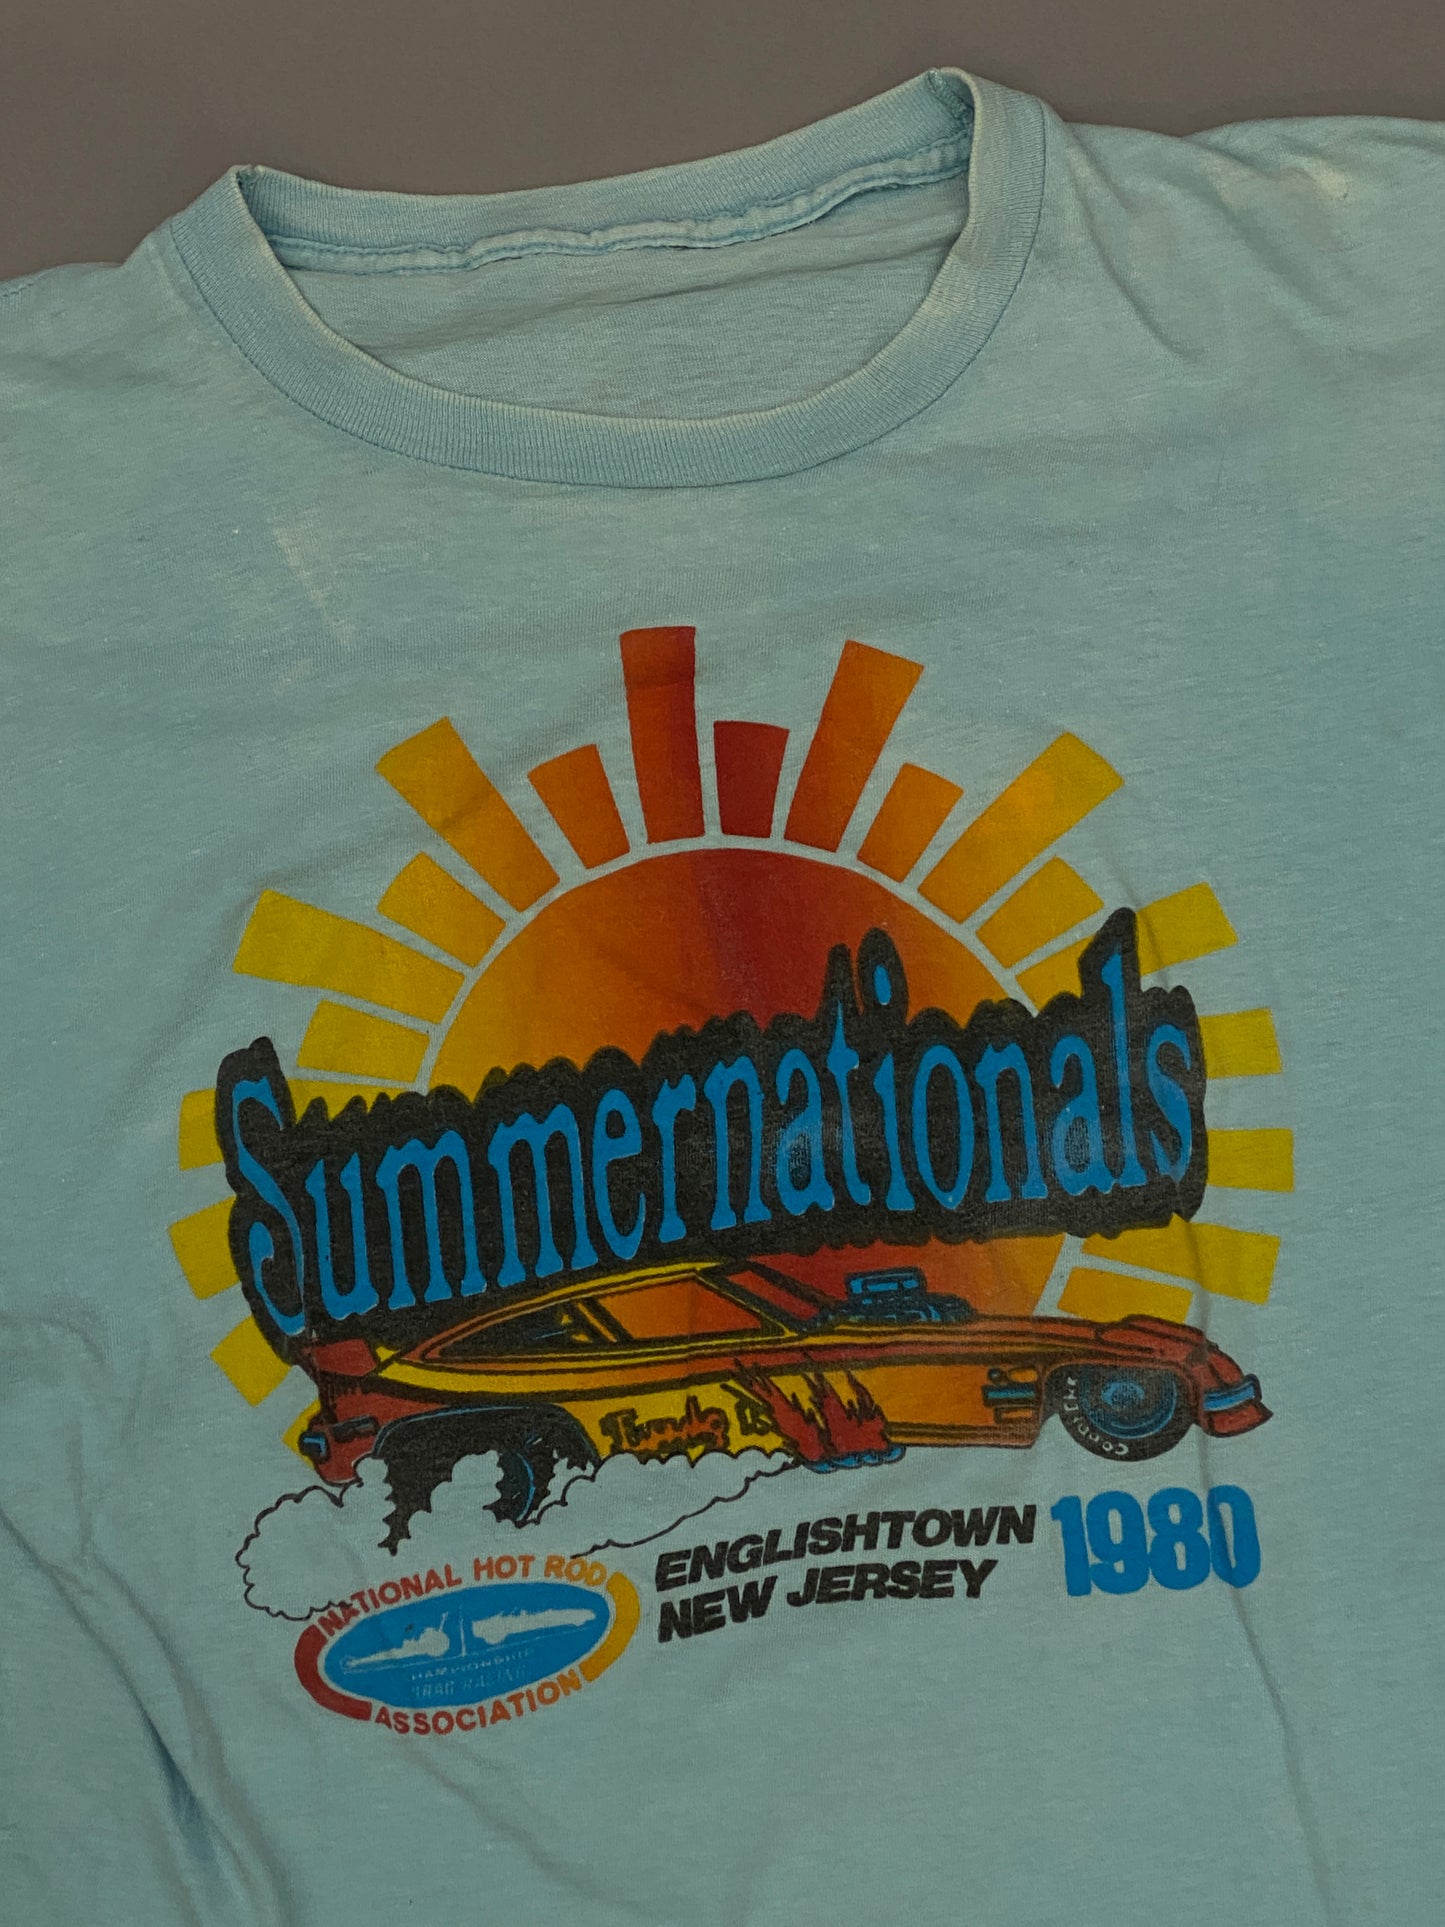 Summernationals 1980 T-shirt